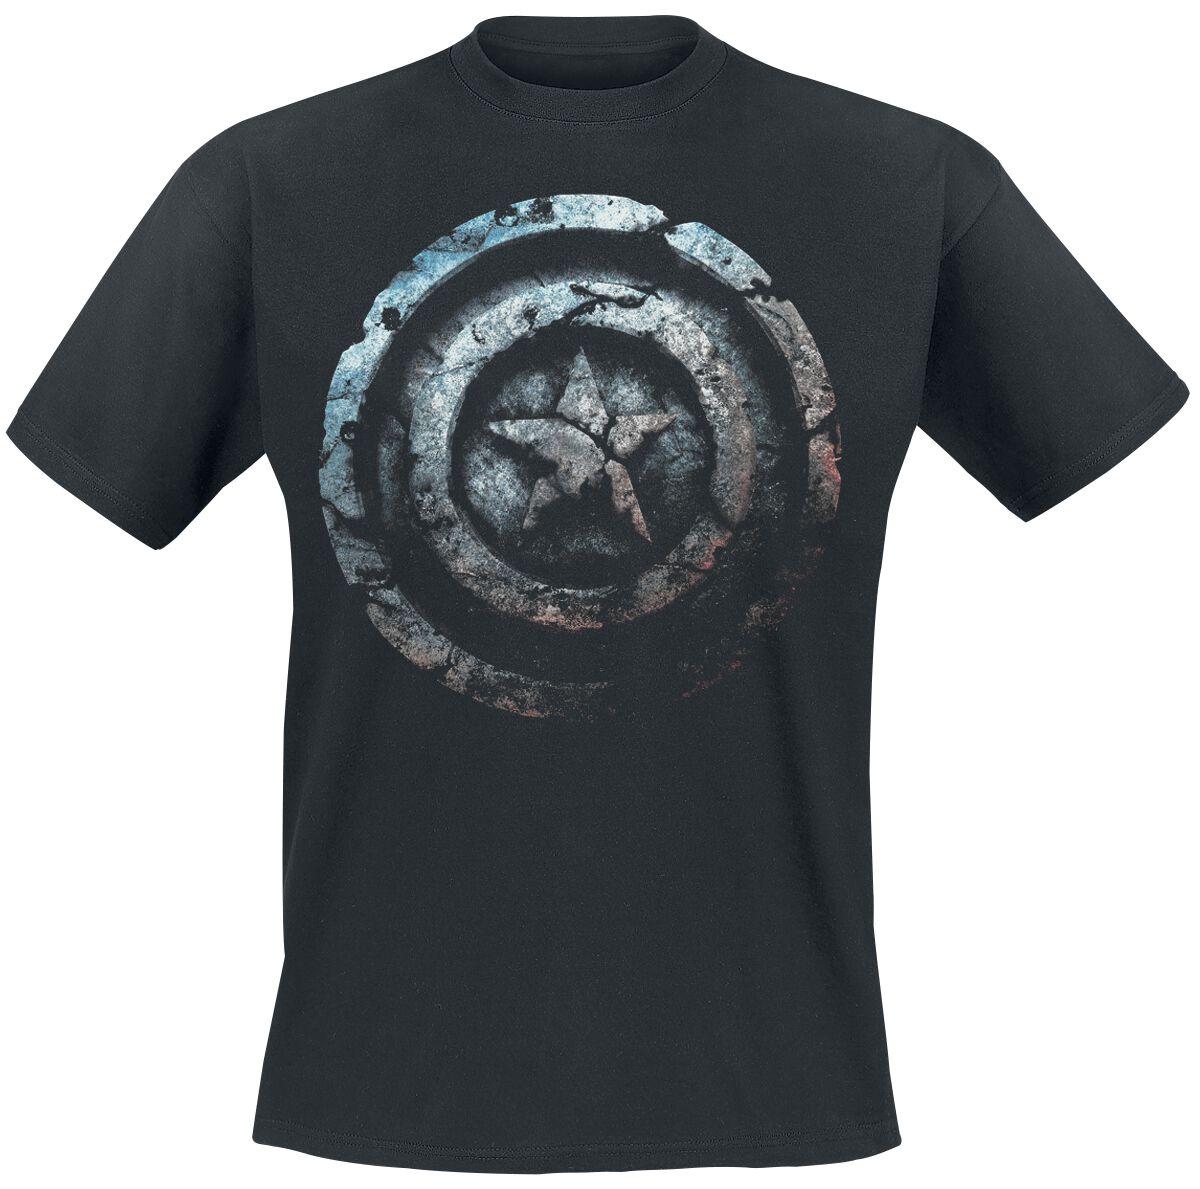 Captain America - Marvel T-Shirt - Stone Shield - S bis 4XL - für Männer - Größe L - schwarz  - EMP exklusives Merchandise!